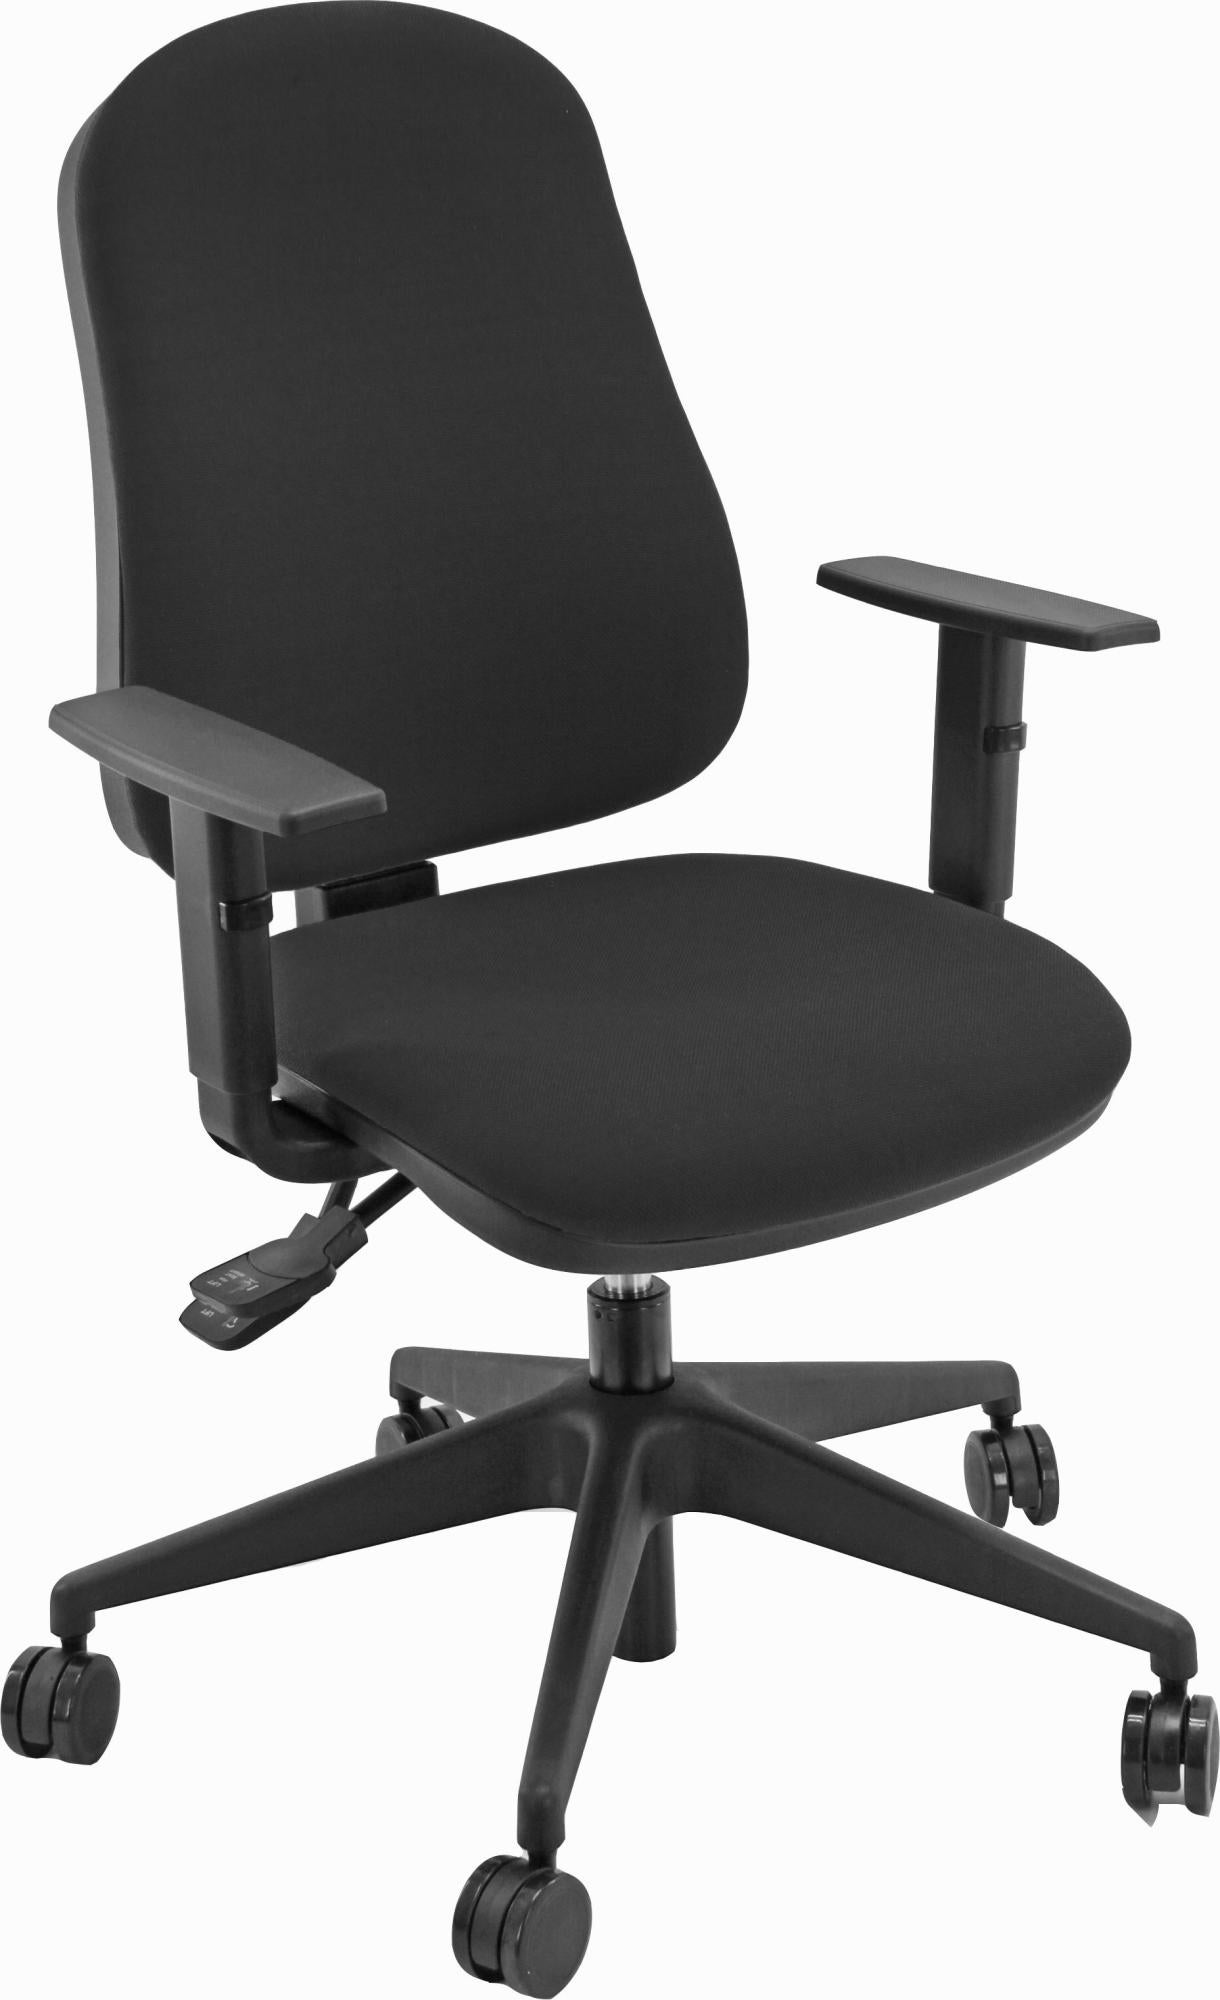 Silla de escritorio sincro simpel color negra con reposabrazos ajustables